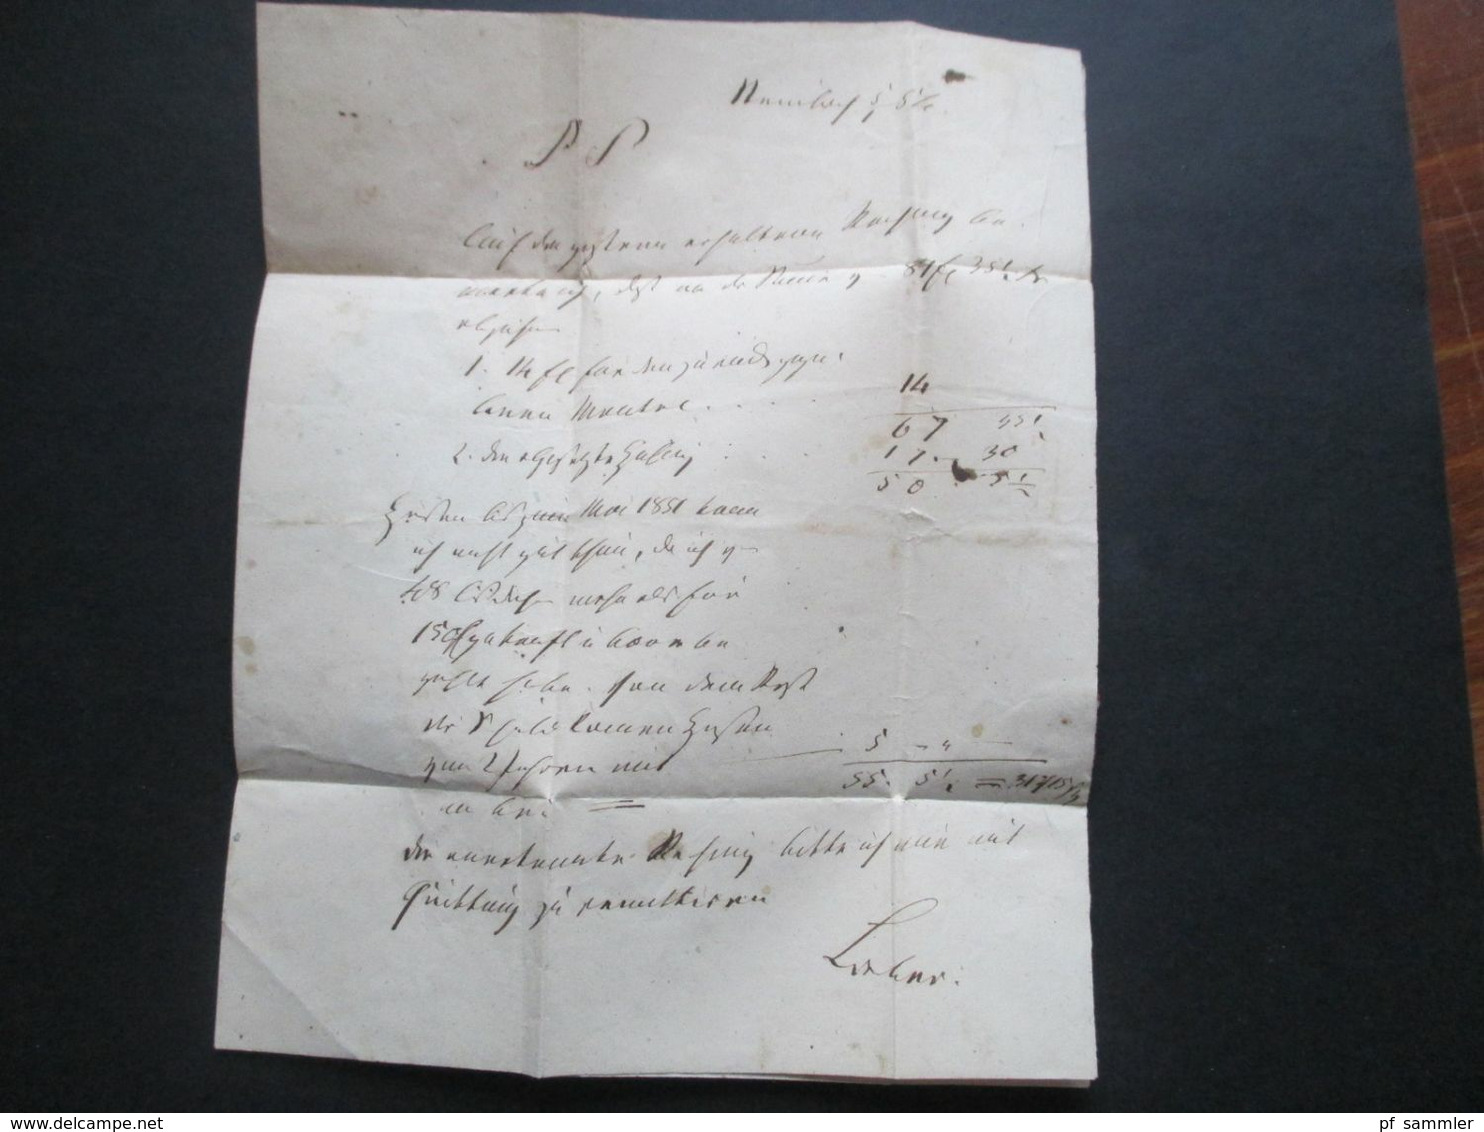 AD Thurn und Taxis 6.1.1854 K1 Steinbach - Hallbg. nach Fulda über Schmalkalden Reko Brief / Rekommandiert /Einschreiben